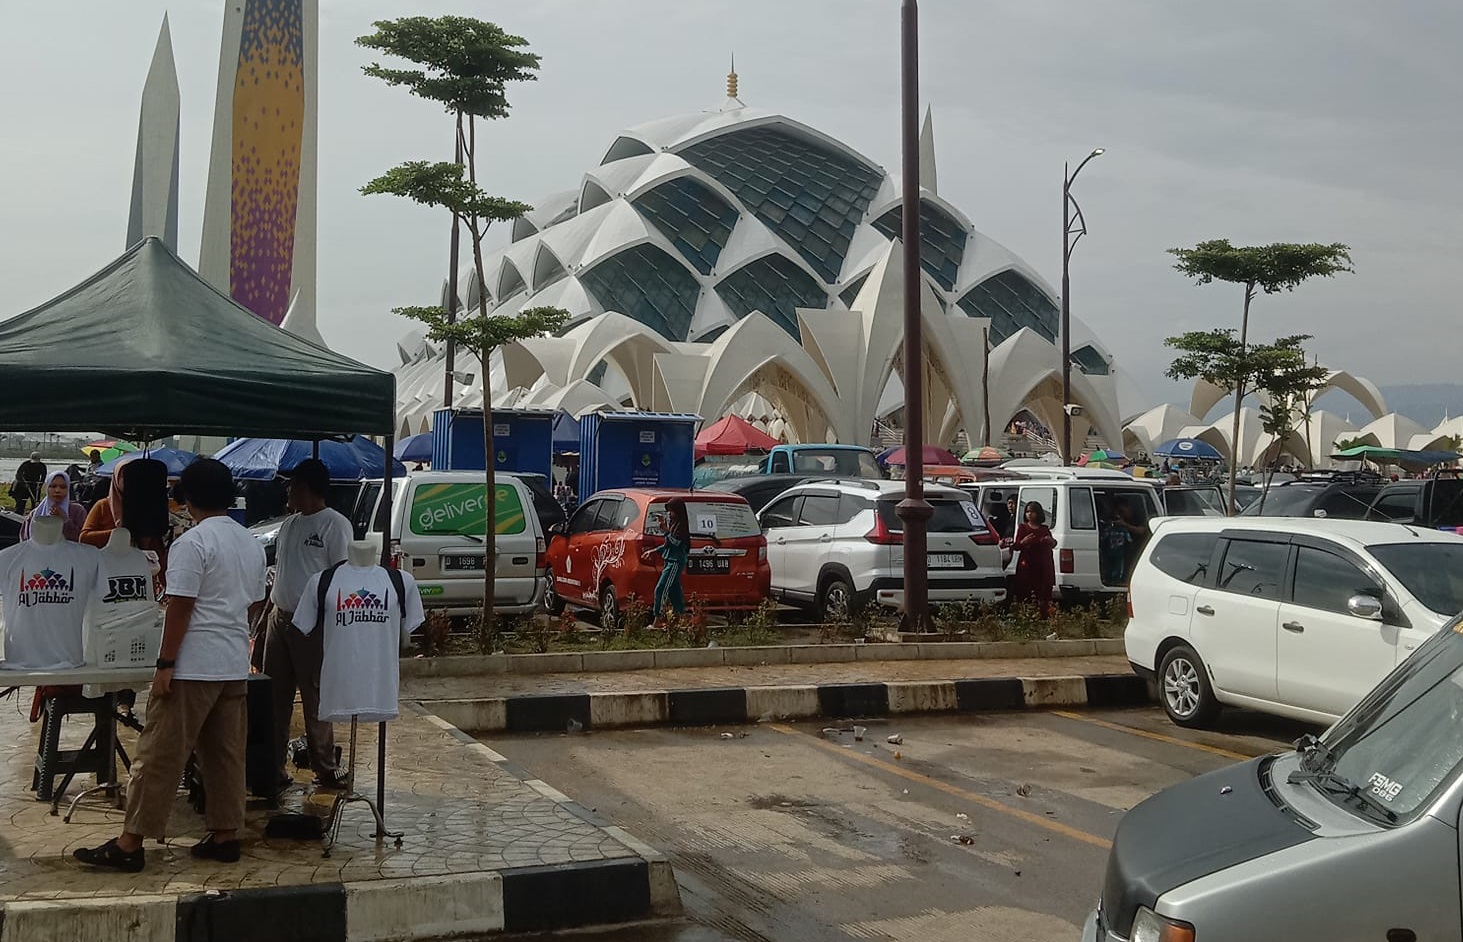 Polemik pengelolaan Parkir Masjid Al Jabbar Kota Bandung sempat mencuat setelah terjadi aksi main getok yang dilakukan oleh oknum masyarakat.